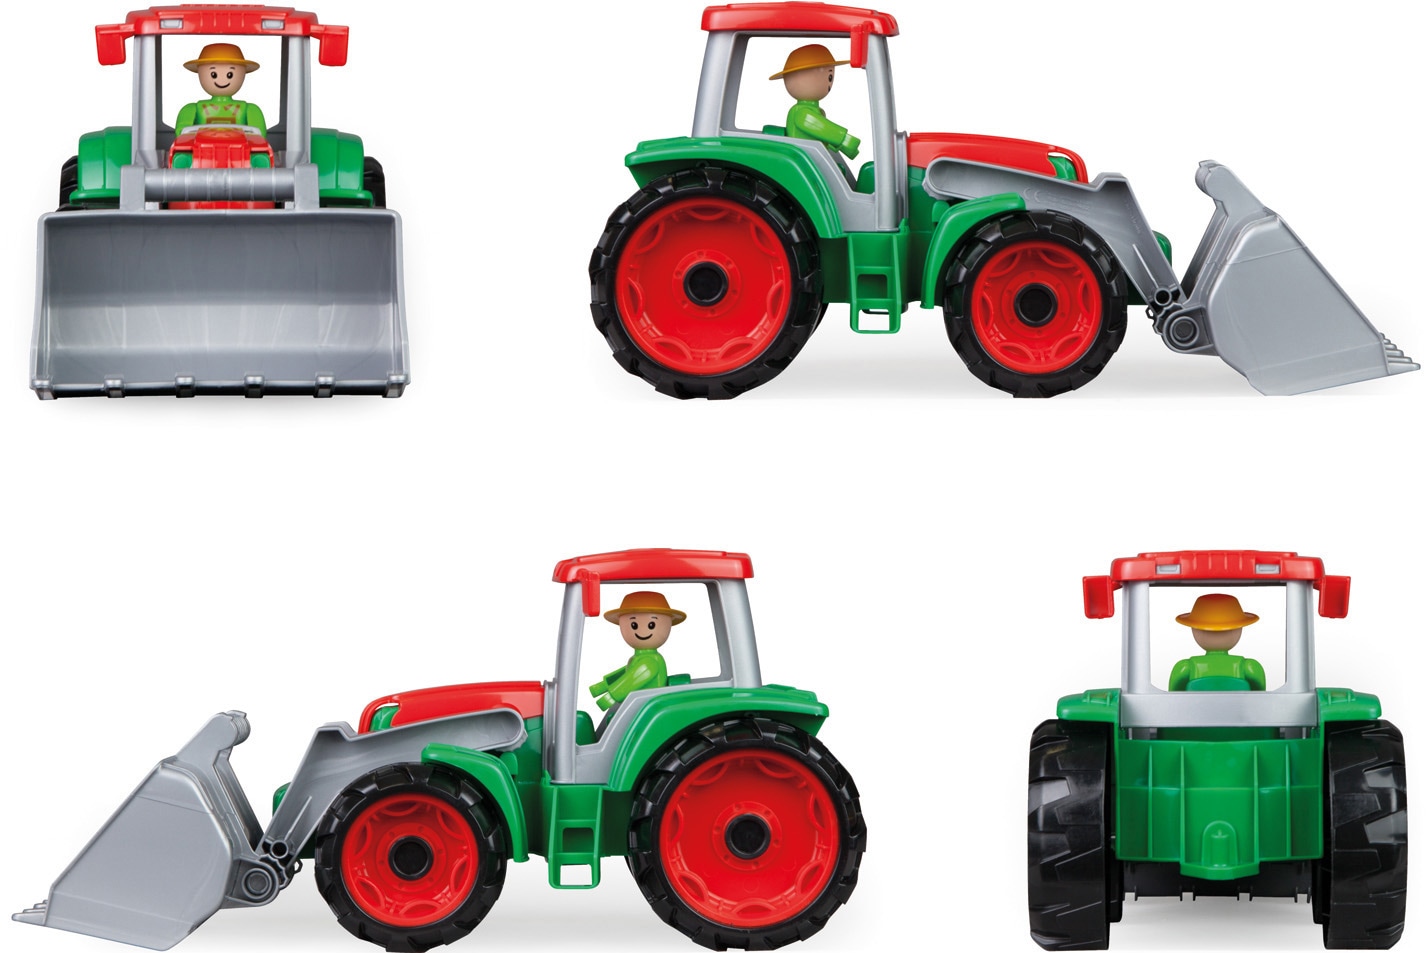 Lena® Spielzeug-Traktor »TRUXX«, Made in Europe